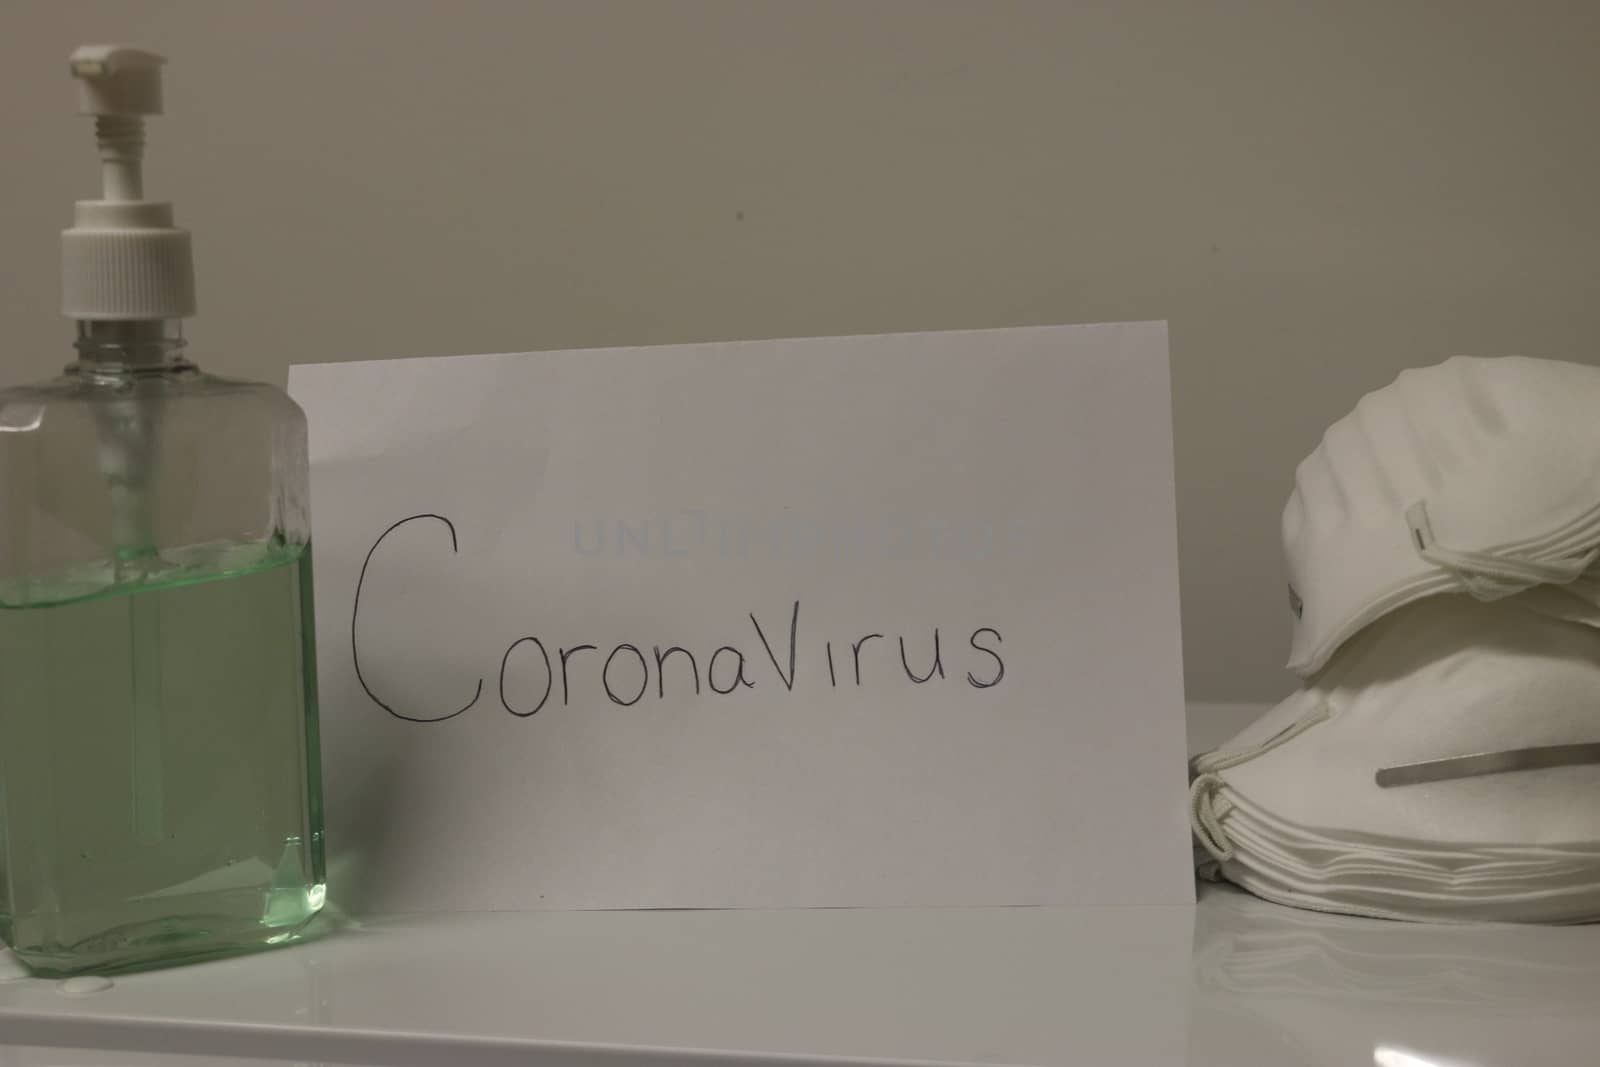 Coronavirus Hand Sanitizer Bottle Dispensing Rubbing Alcohol Gel For Hands Hygiene Health Care